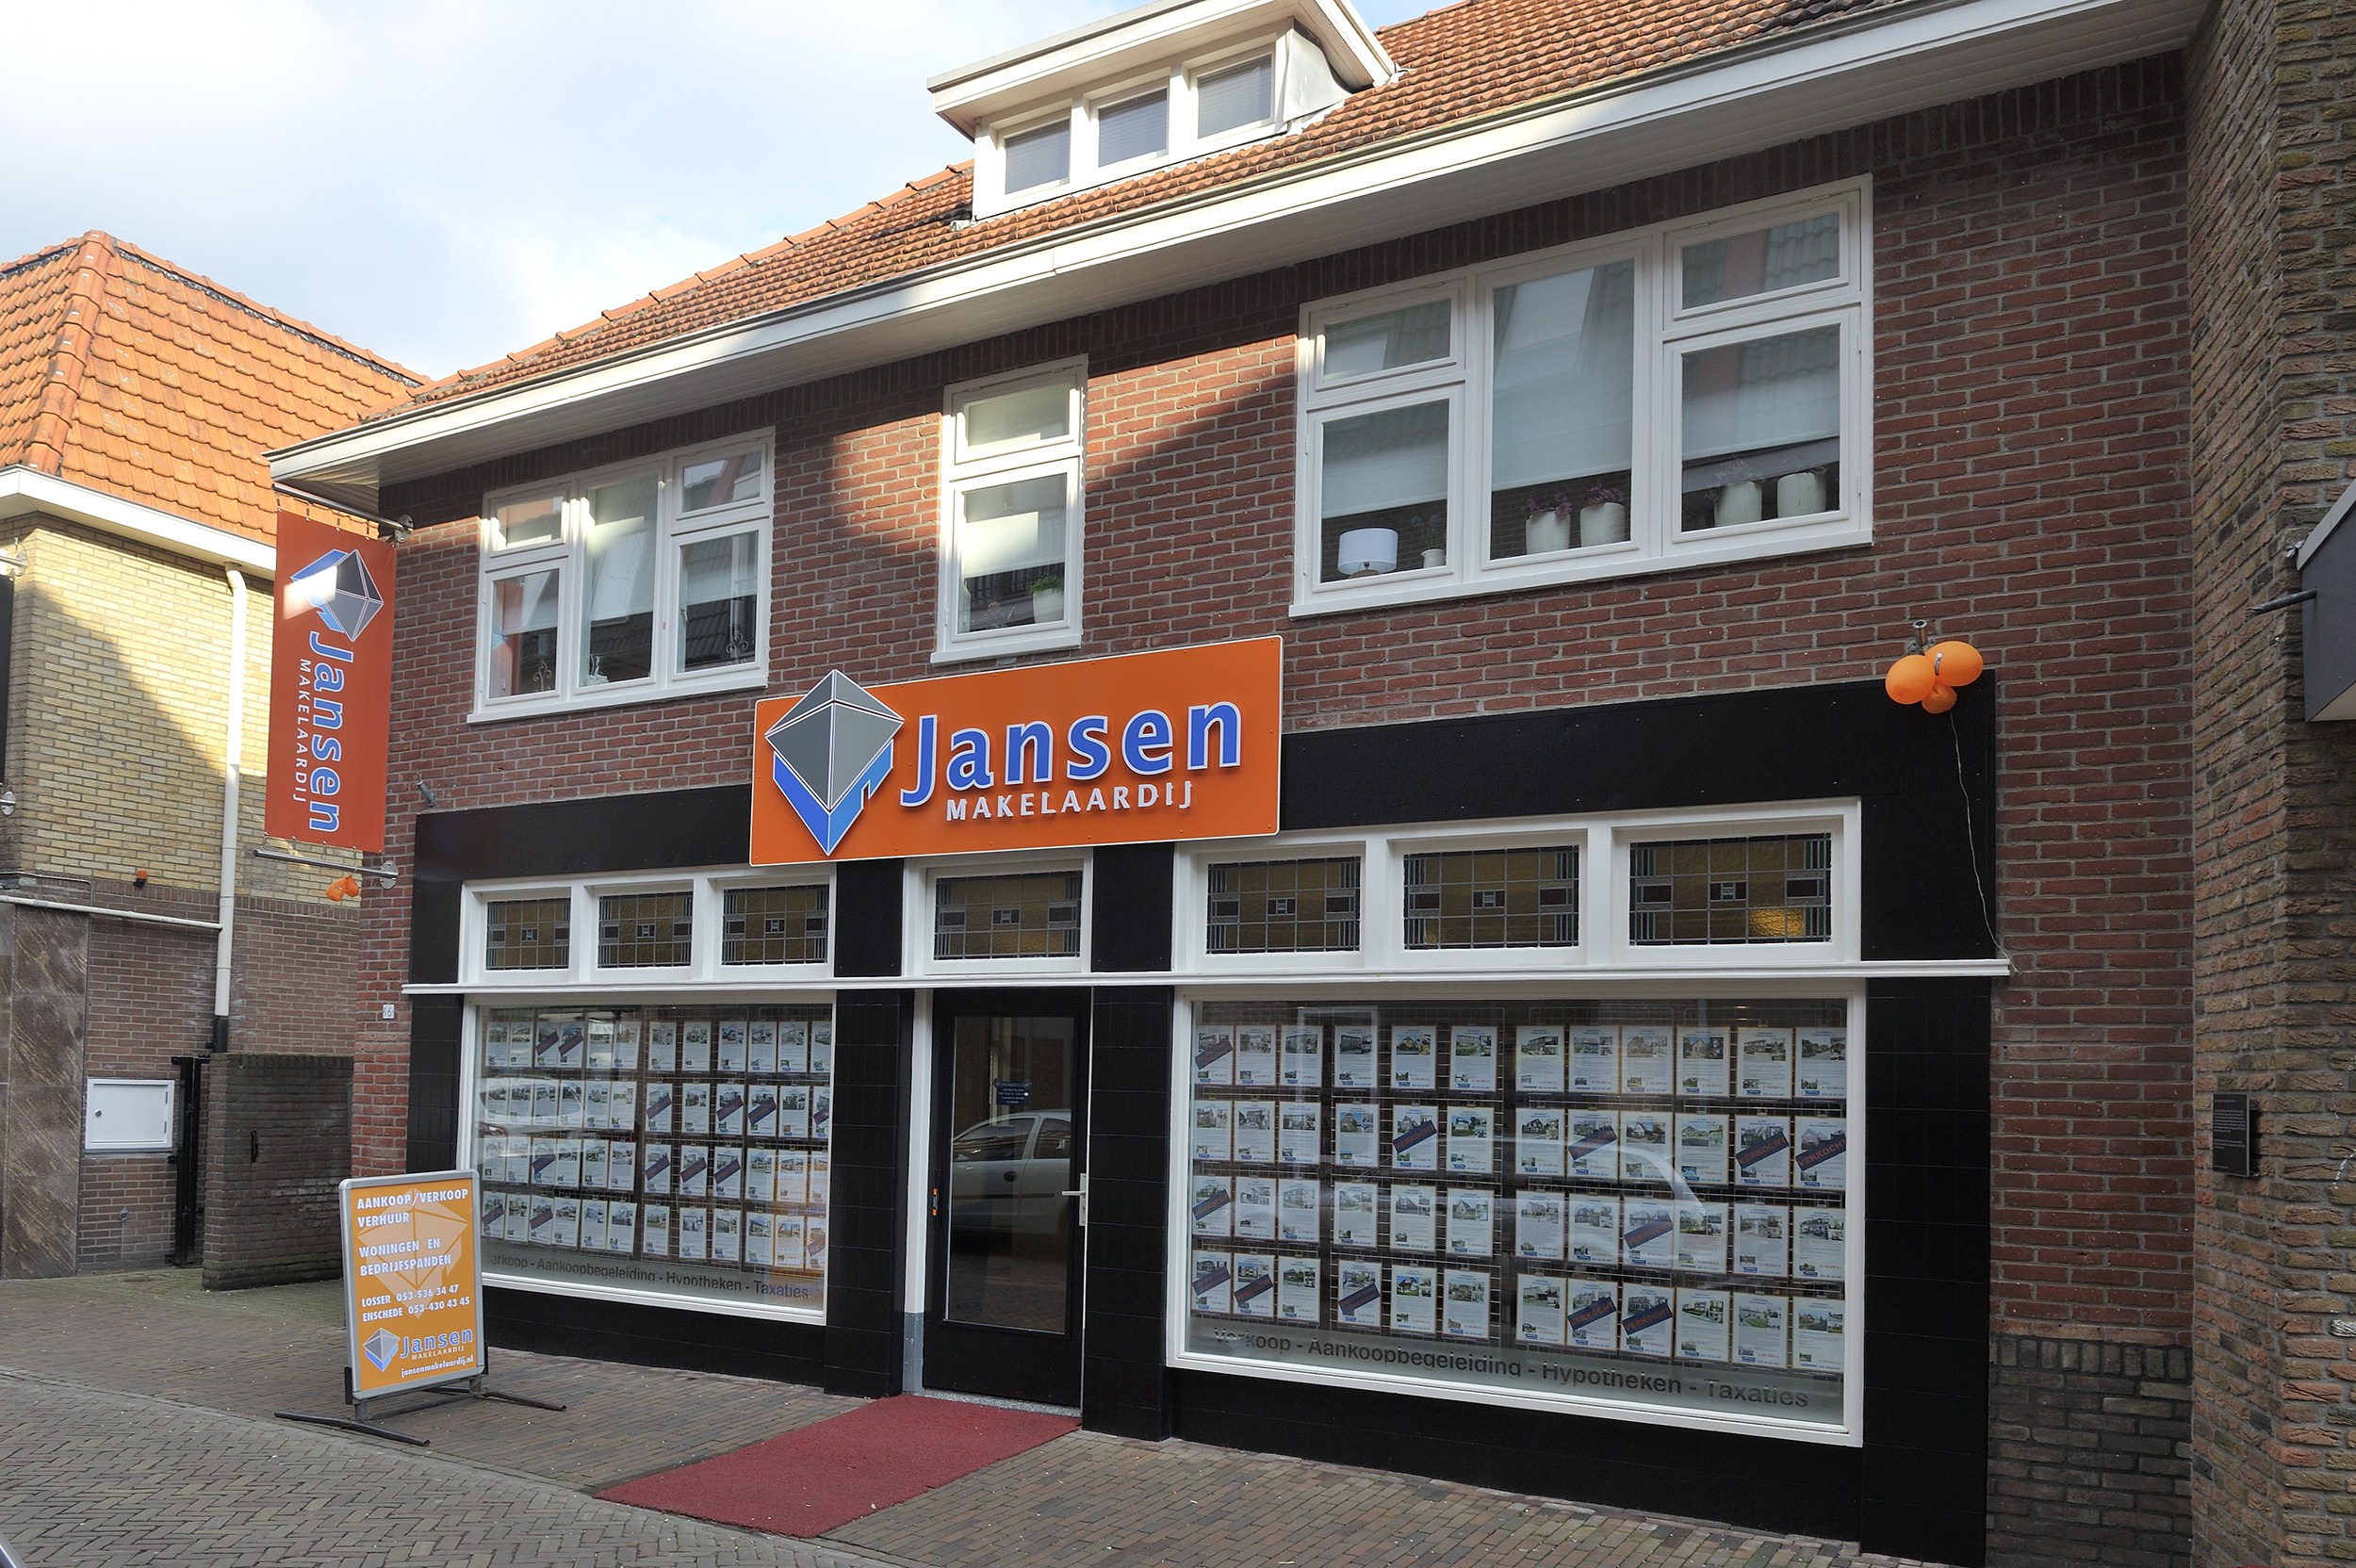 Jansen Makelaardij Enschede & Losser Brinkstraat 171A 7512 ED ENSCHEDE T: (053) 4304345 Brinkstraat 16 7581 GC